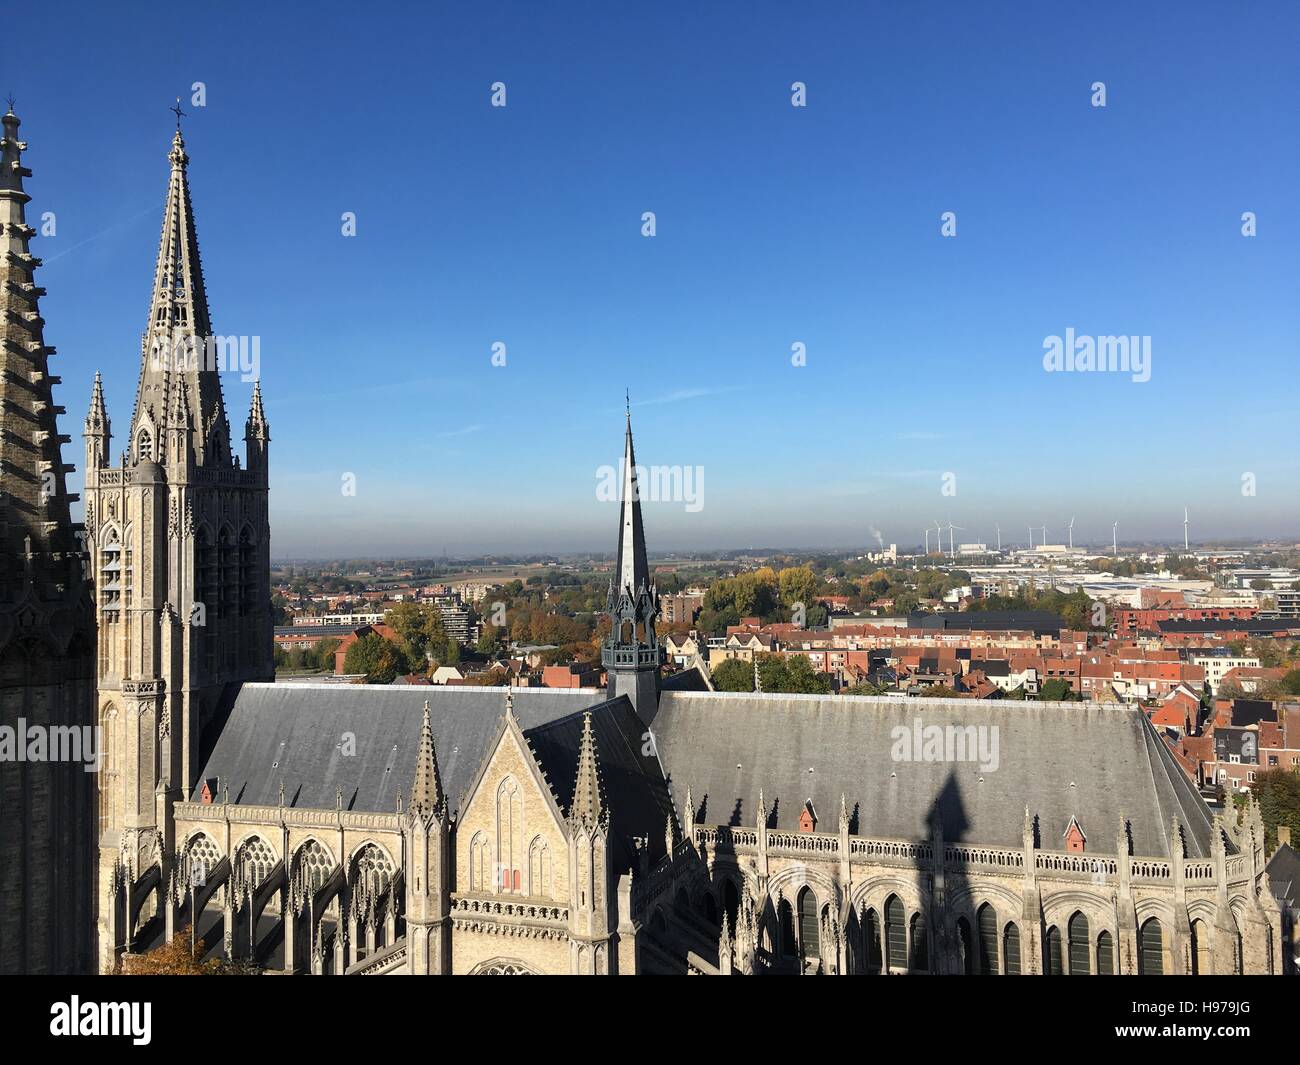 Hallen, grote Markt, gerechtsgebouw en Sint-Maartens Kathedraal Ieper vanuit de lucht Stock Photo